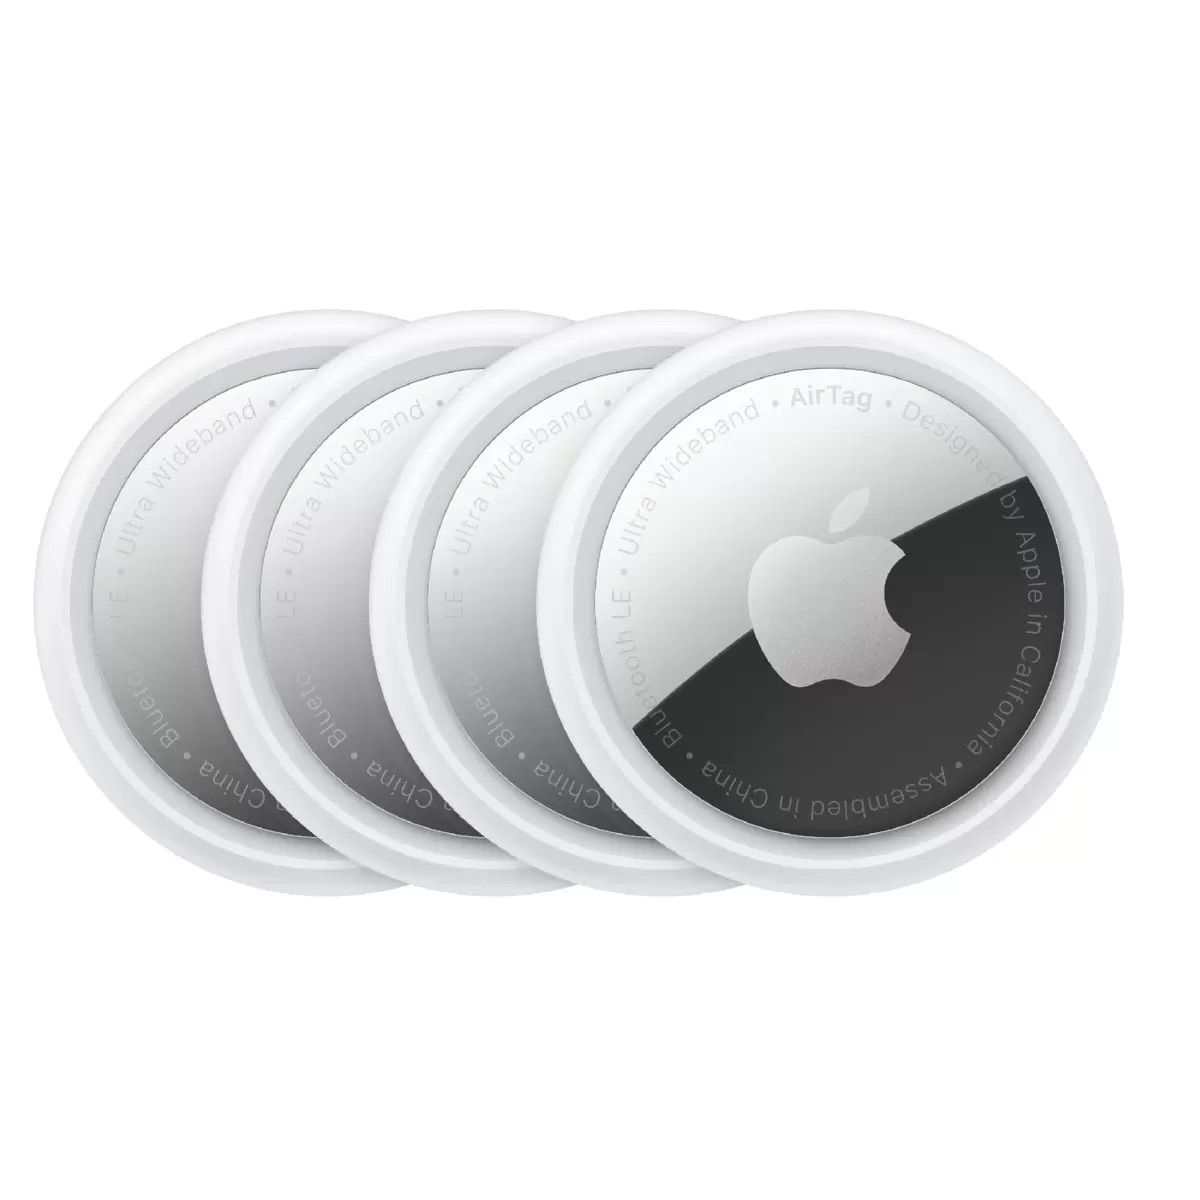 AirTag (4個入り)Apple AirTag 4 pack